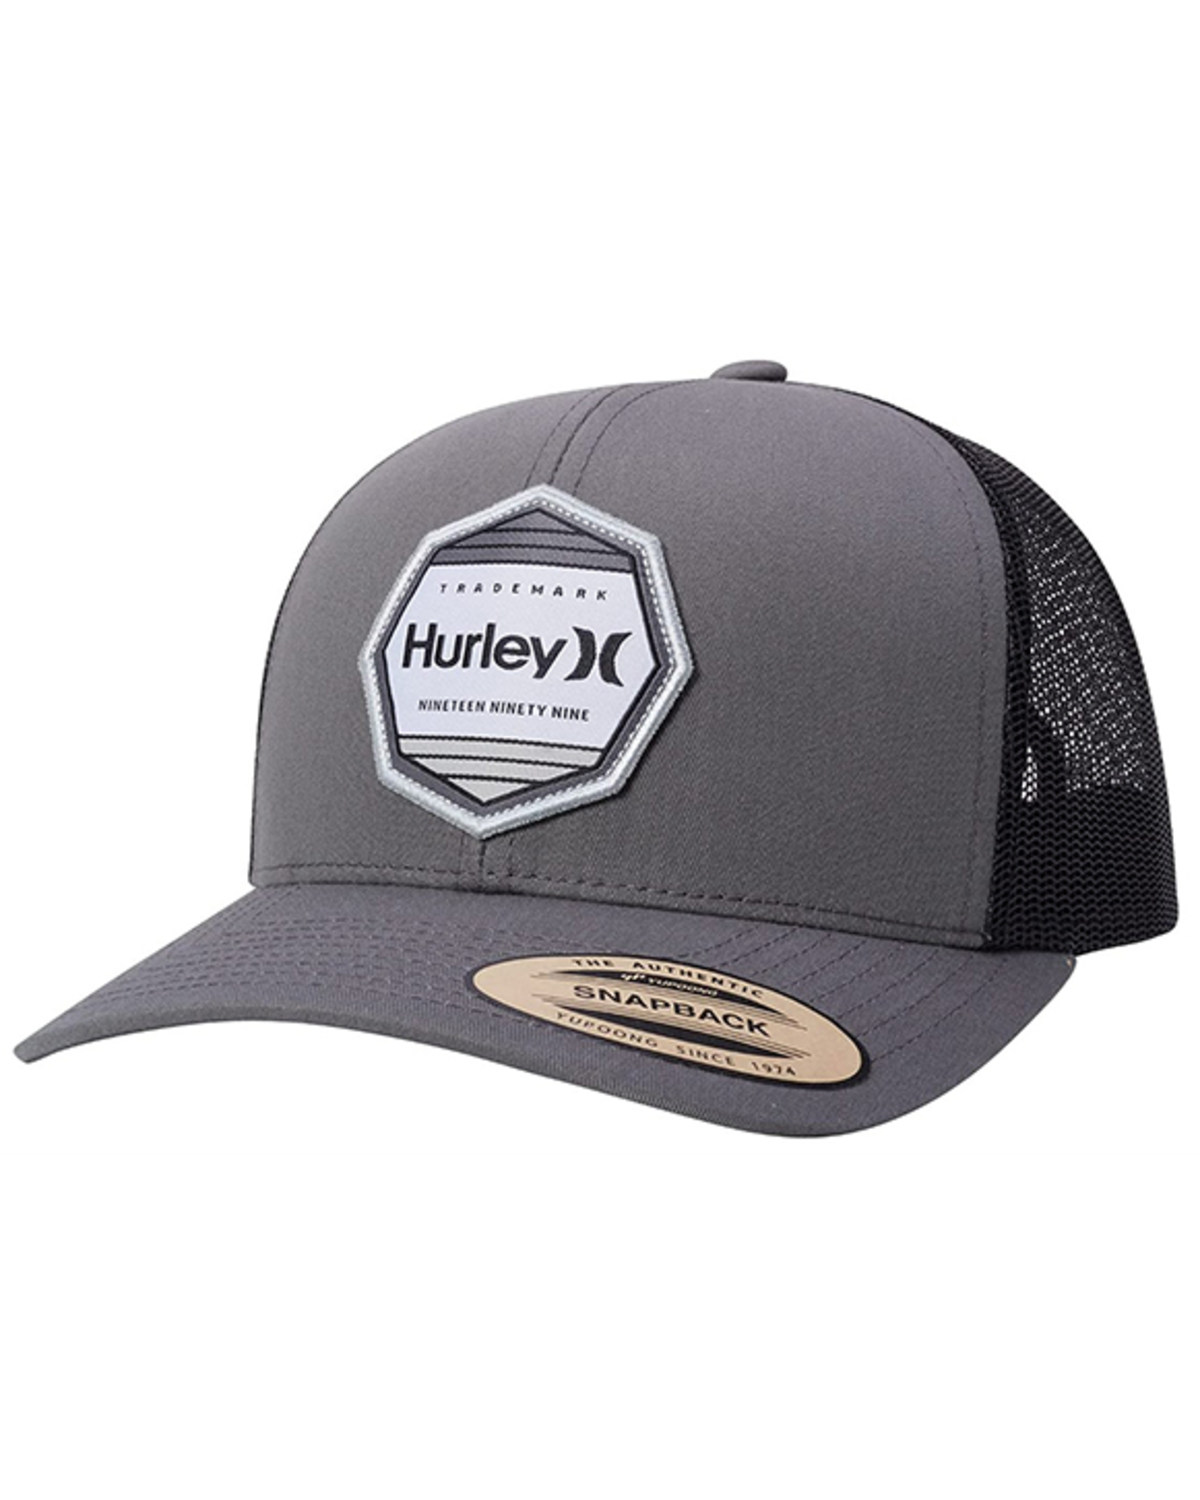 Hurley Men's Pacific Logo Patch Mesh Back Trucker Cap